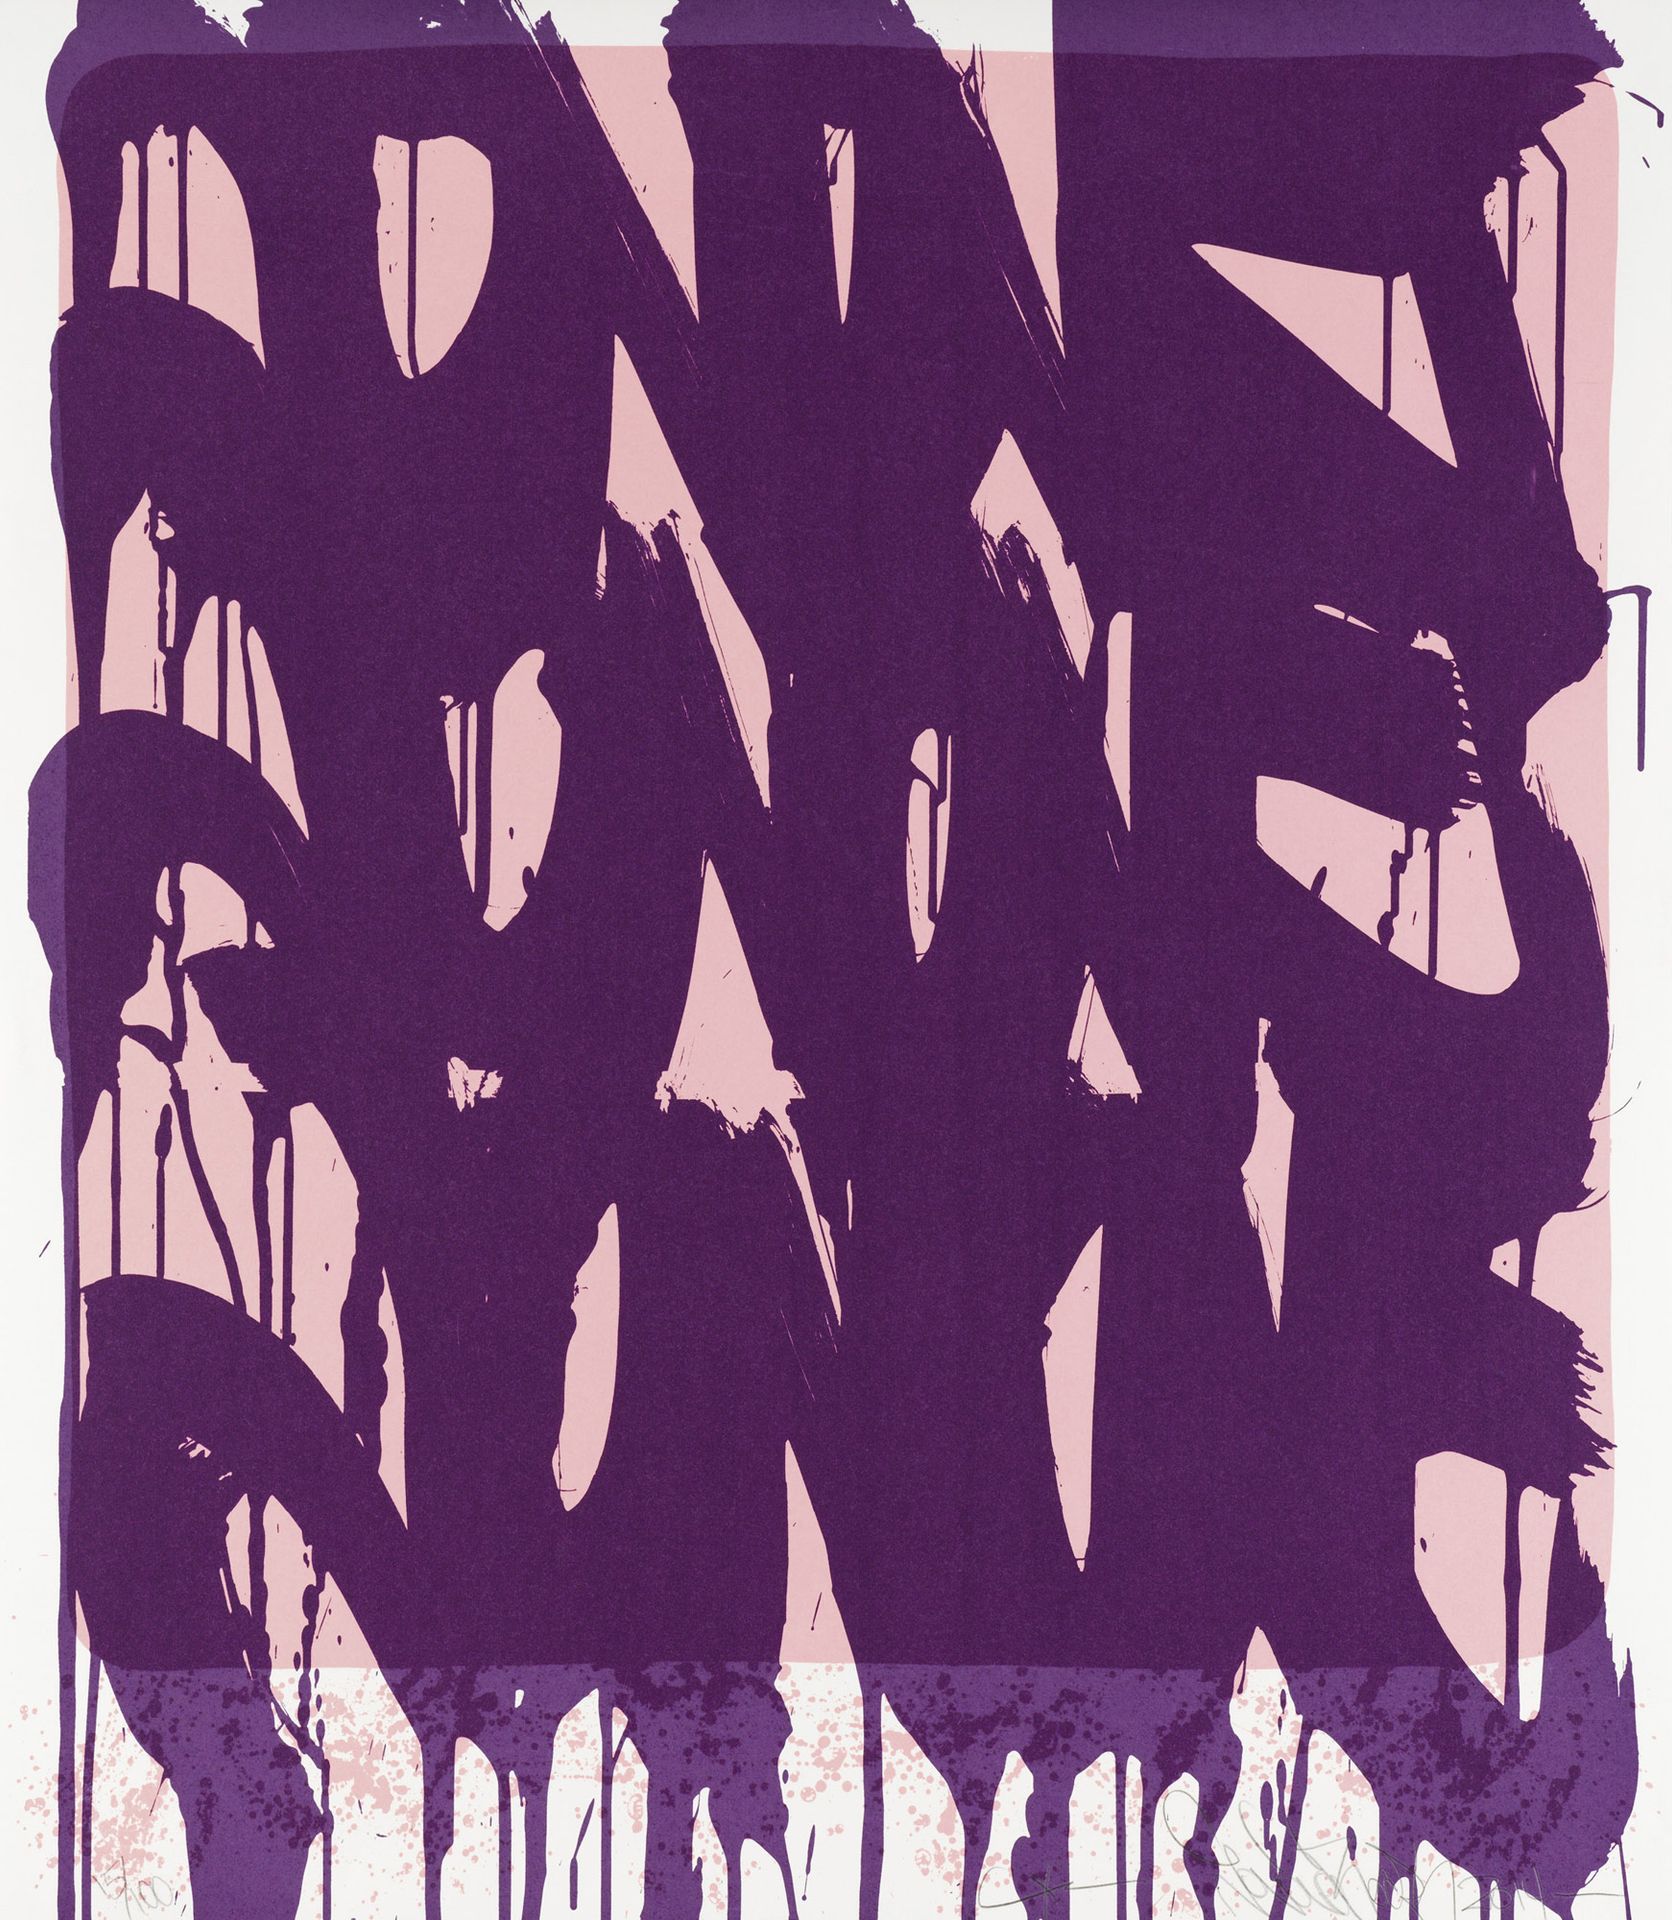 JONONE (ANDREW PERELLO DIT) (NE EN 1963) DRIPPING TAGS, 2014
Serigrafia su carta&hellip;